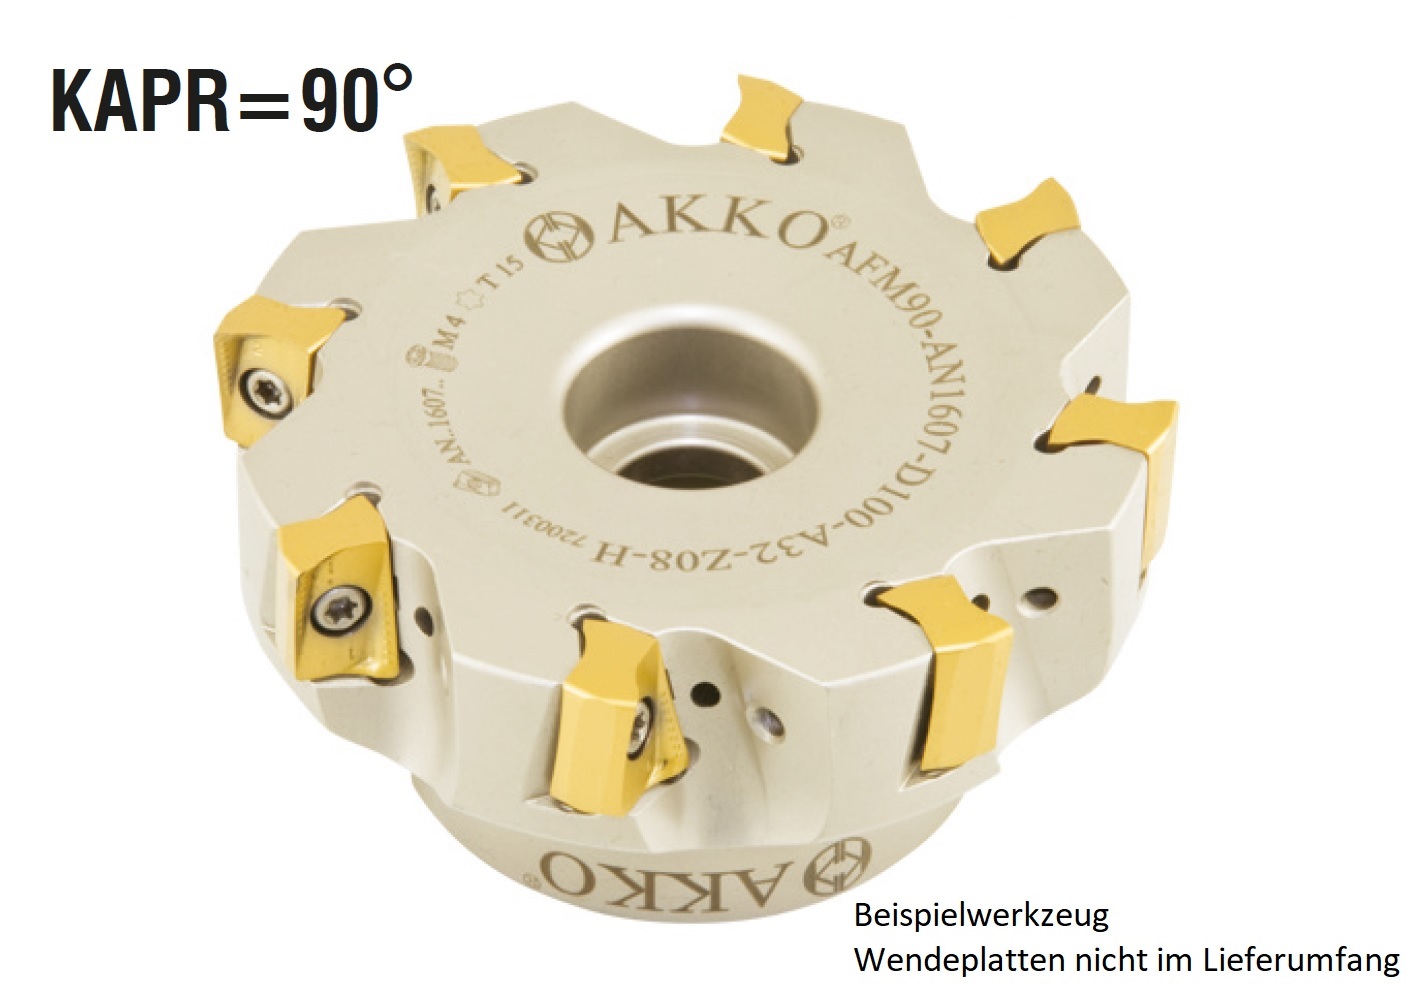 AKKO-Eckmesserkopf ø 80 mm, 90° Anstellwinkel, kompatibel mit Taegutec AN.X 1607..
Schaft-Ausführung ø 27 mm (Typ A), mit Innenkühlung, Z=7